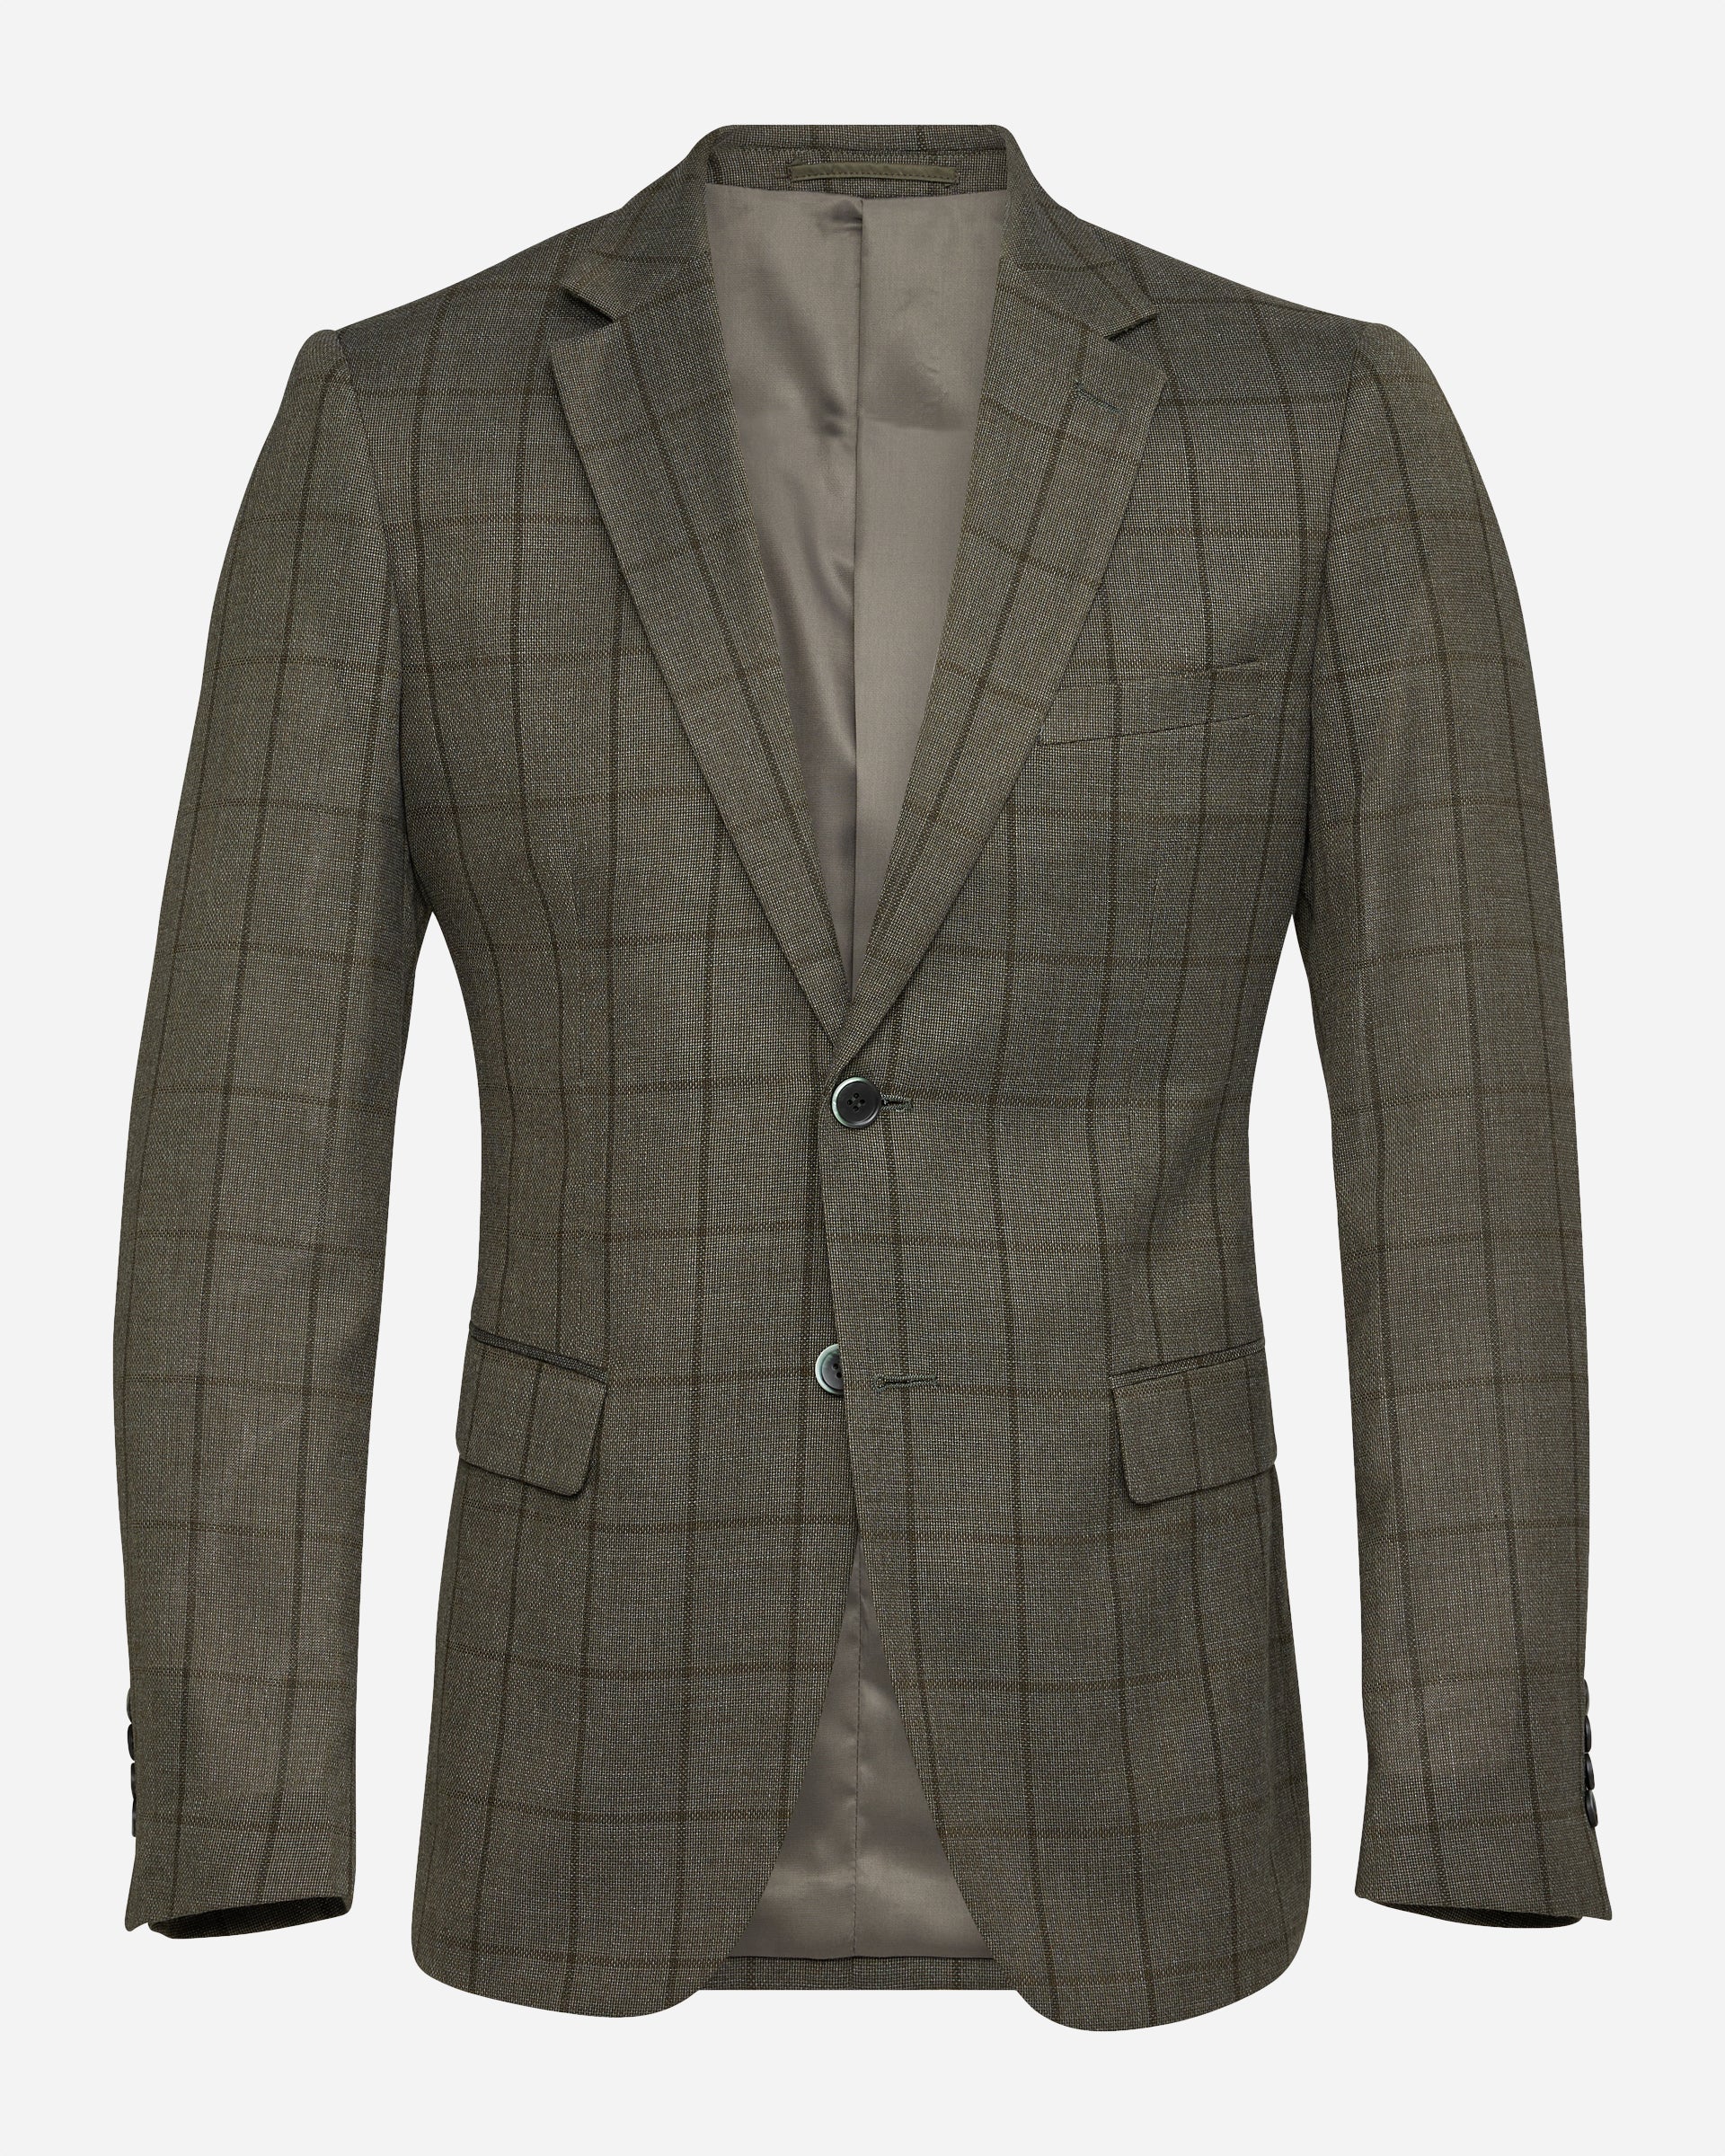 Lombard Suit - Men's Suits at Menzclub